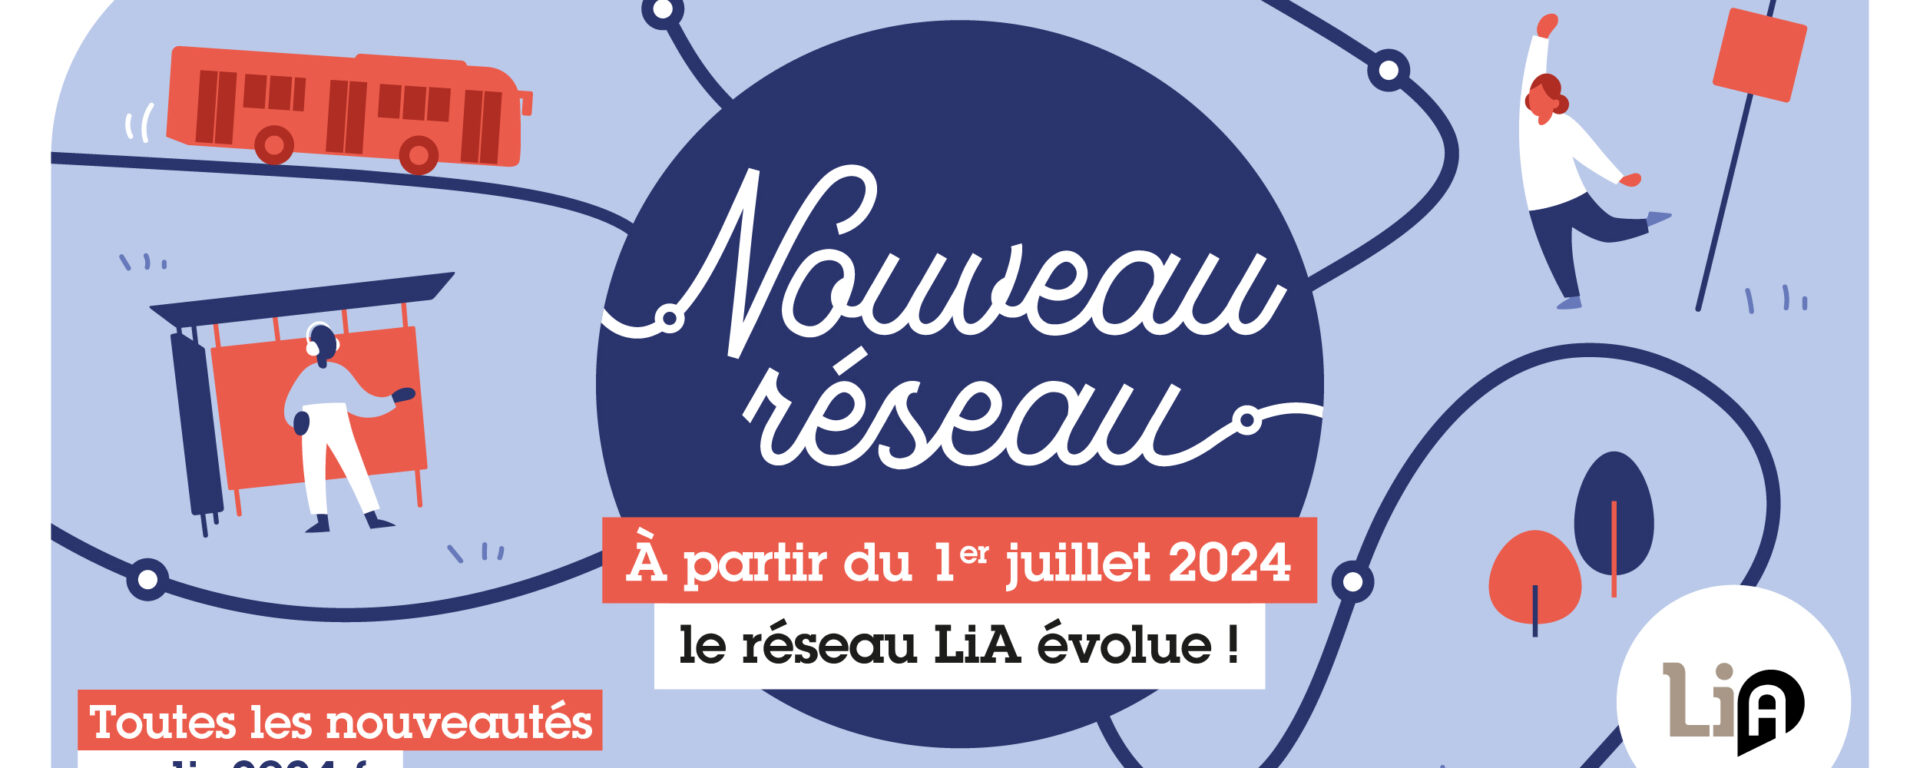 Affiche pour le nouveau réseau LiA au Havre